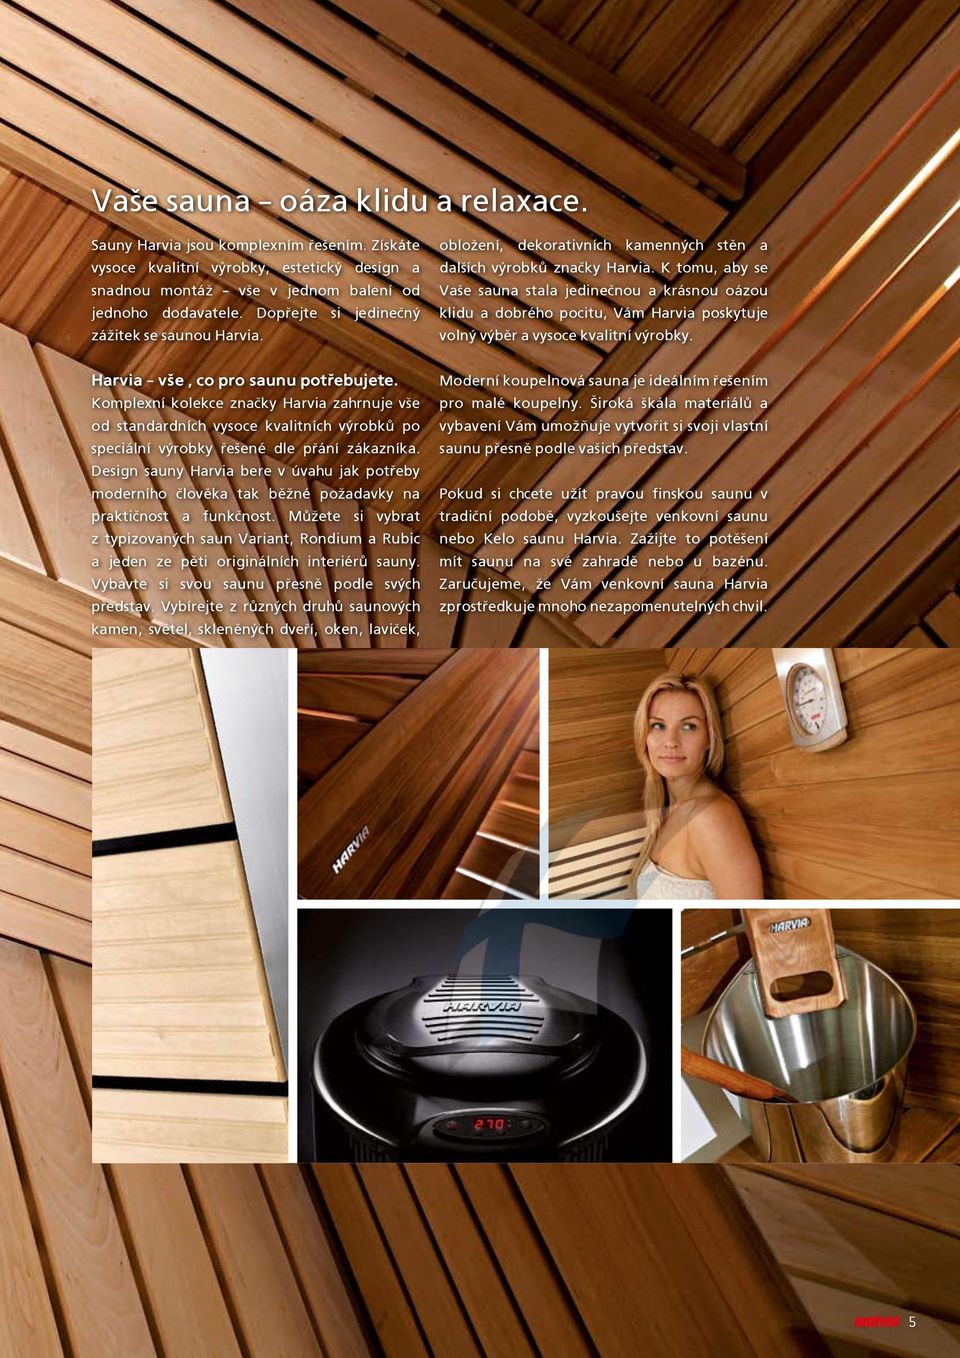 K tomu, aby se Va¹e sauna stala jedineènou a krásnou oázou klidu a dobrého pocitu, Vám Harvia poskytuje volný výbìr a vysoce kvalitní výrobky. Harvia v¹e, co pro saunu potøebujete.